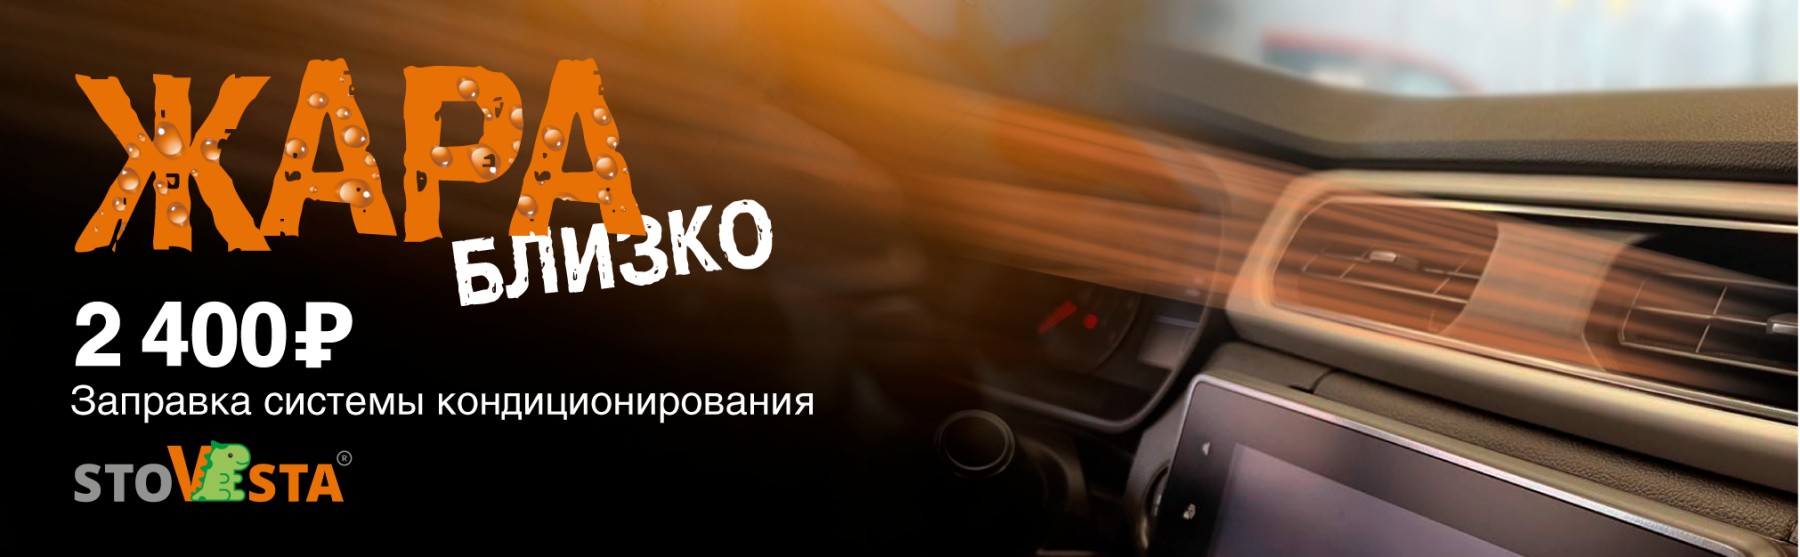 Заправка кондиционера за 2900 рублей по акции Жара близко в StoVesta